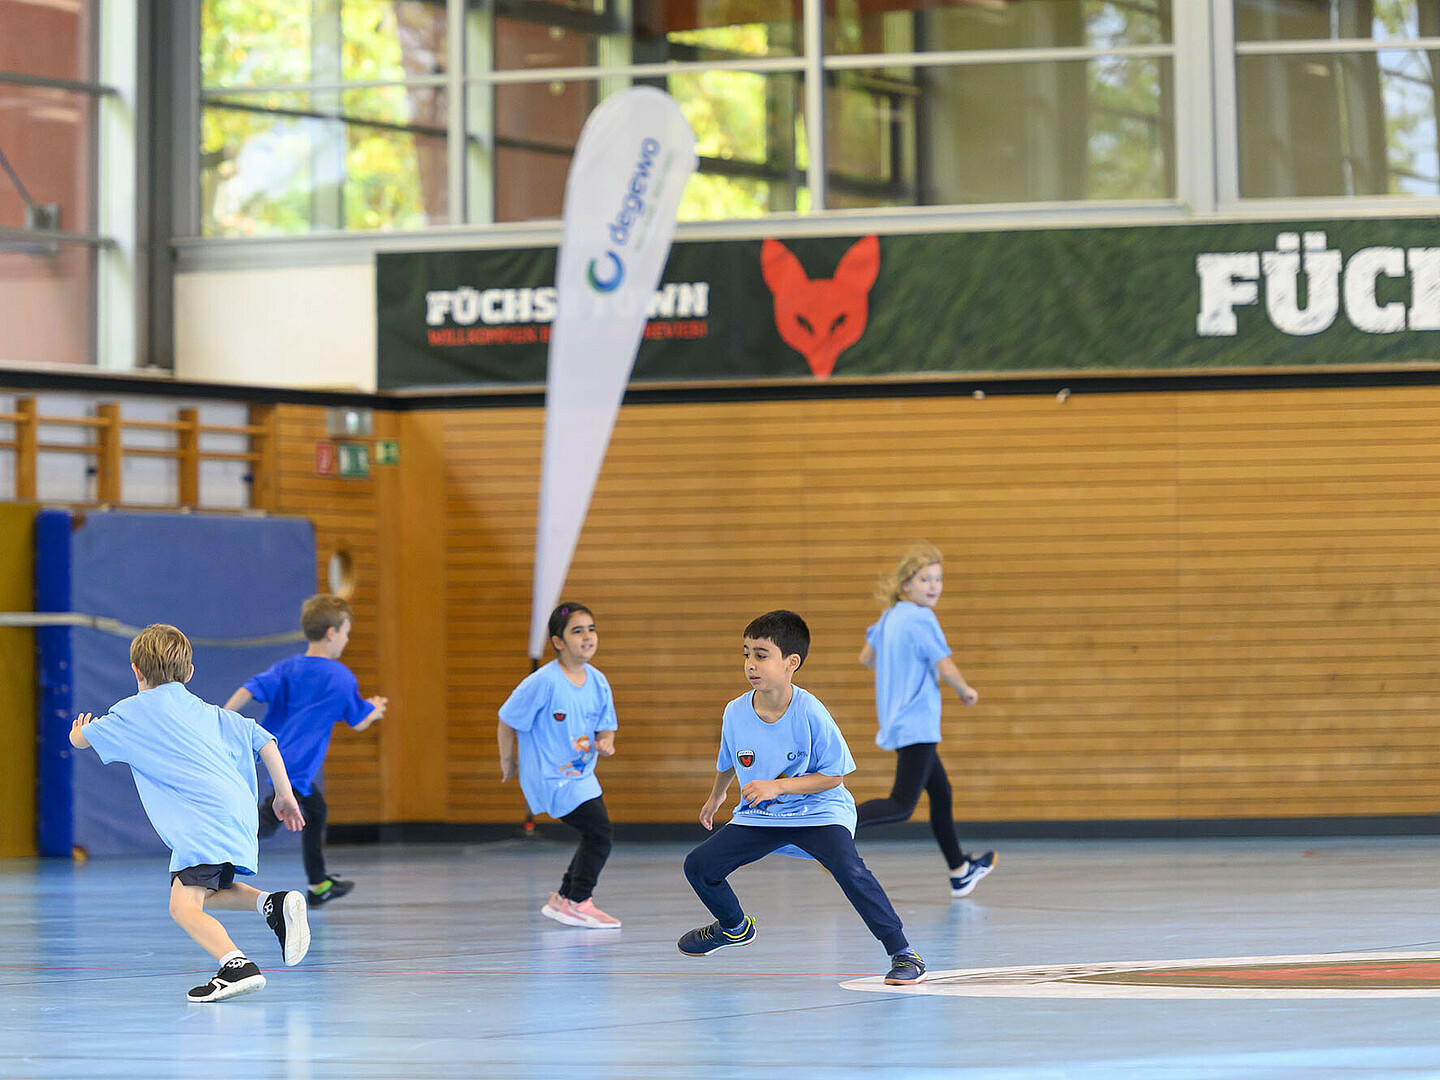 Fünf Kinder in blauen Trikots rennen durch eine Sporthalle.